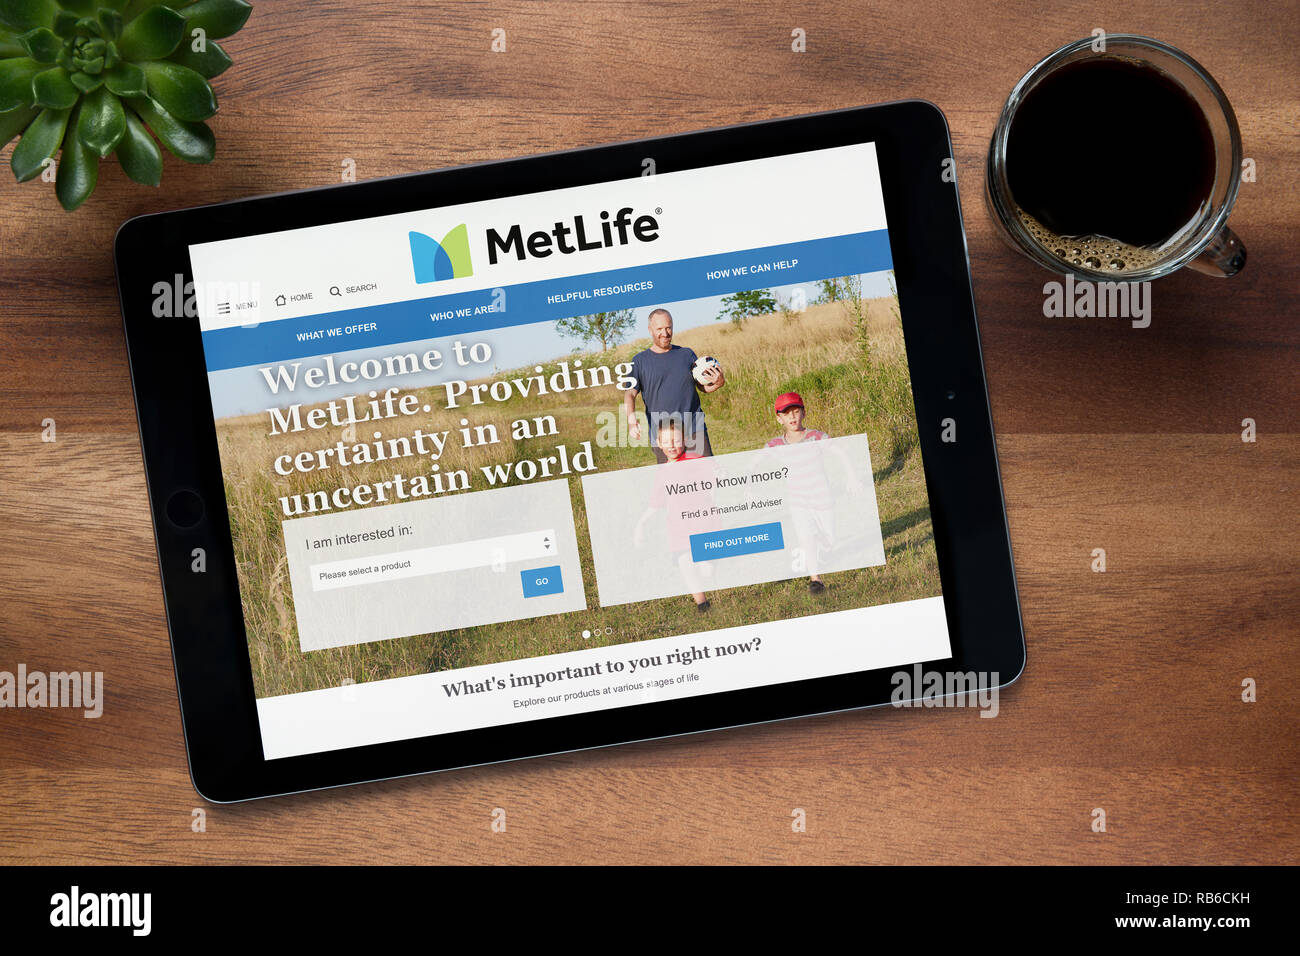 Le site web de MetLife est vu sur un iPad tablet, sur une table en bois avec une machine à expresso et d'une plante (usage éditorial uniquement). Banque D'Images